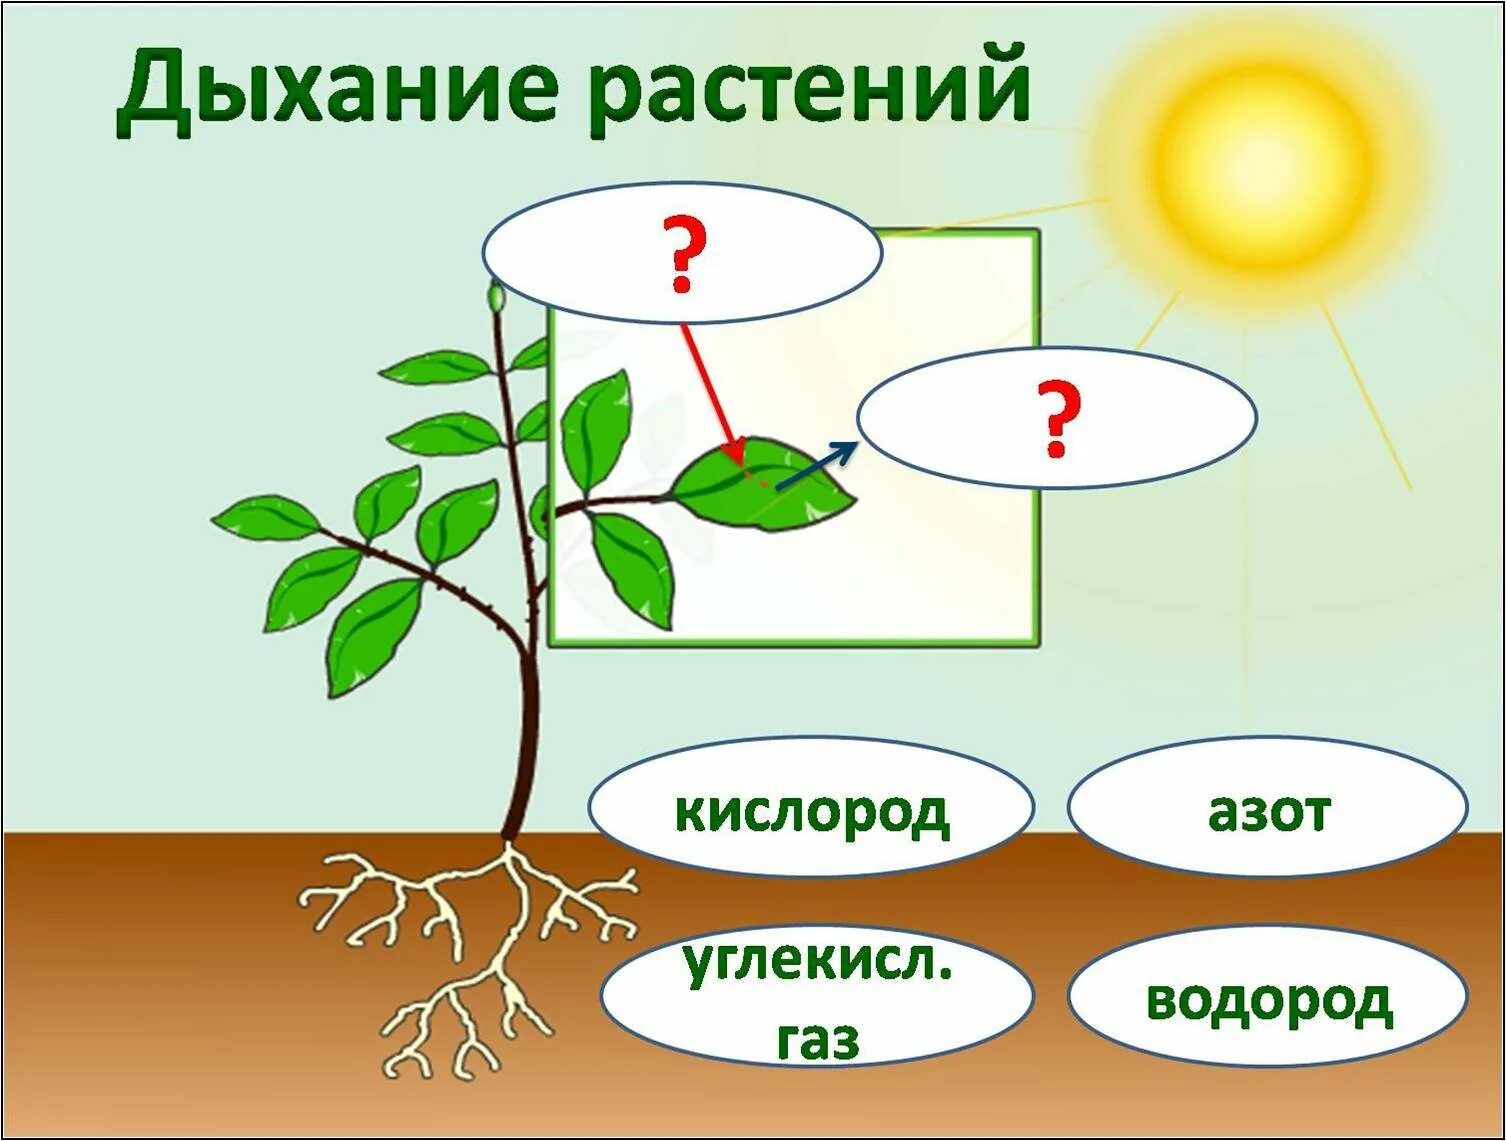 Схема как происходит дыхание растений. Дыхание растений. Растения дышат. Строение комнатного растения. Схема по растениям.